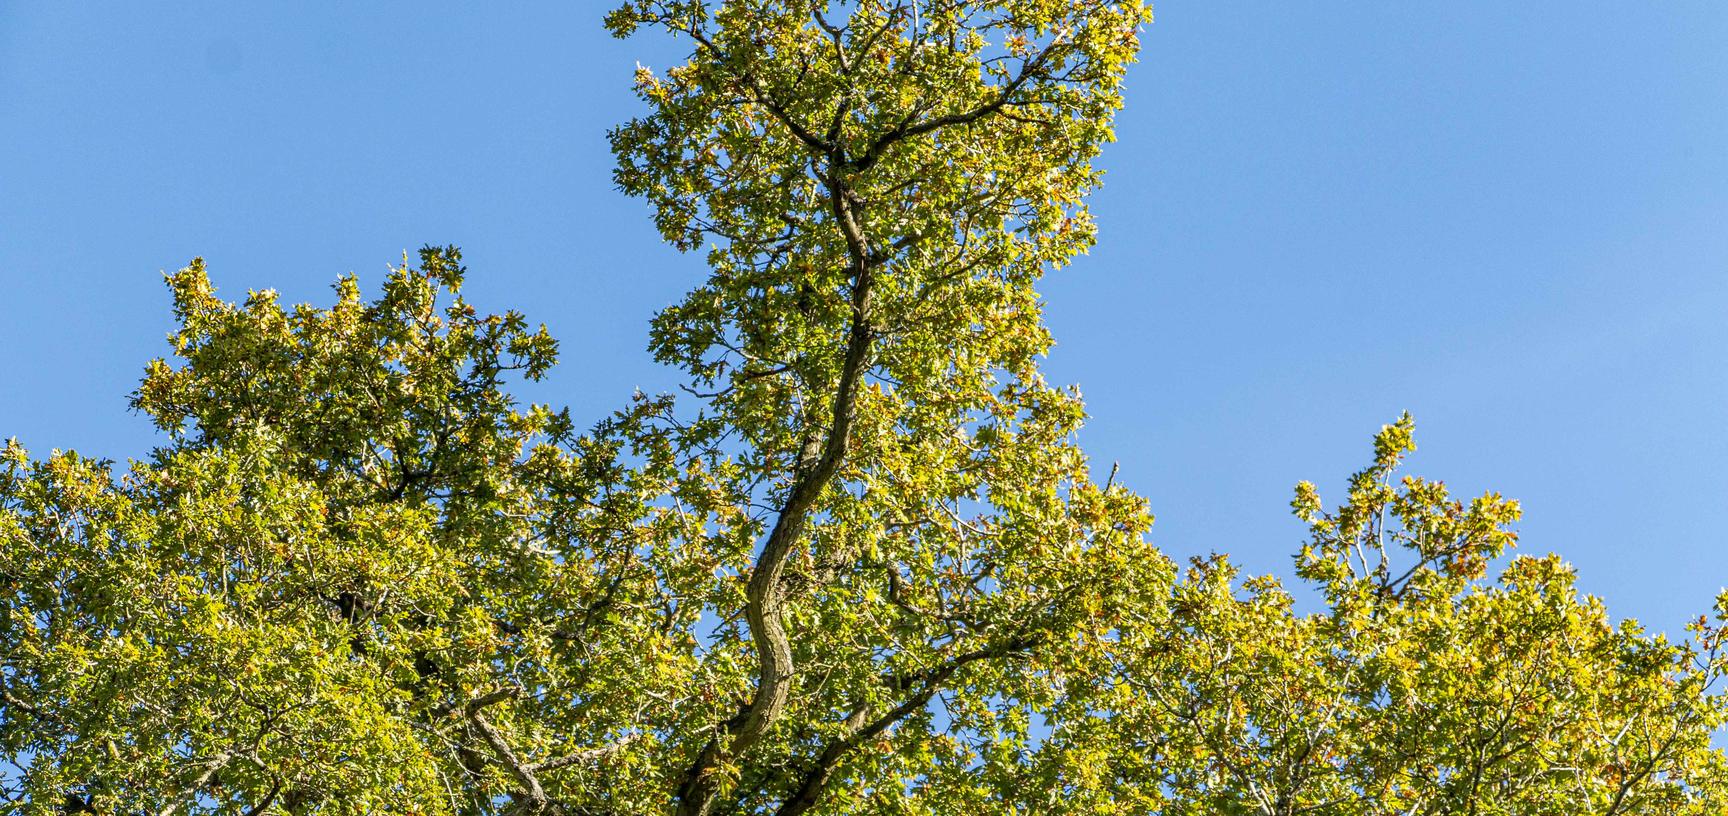 harcourt arboretum autumn 2021